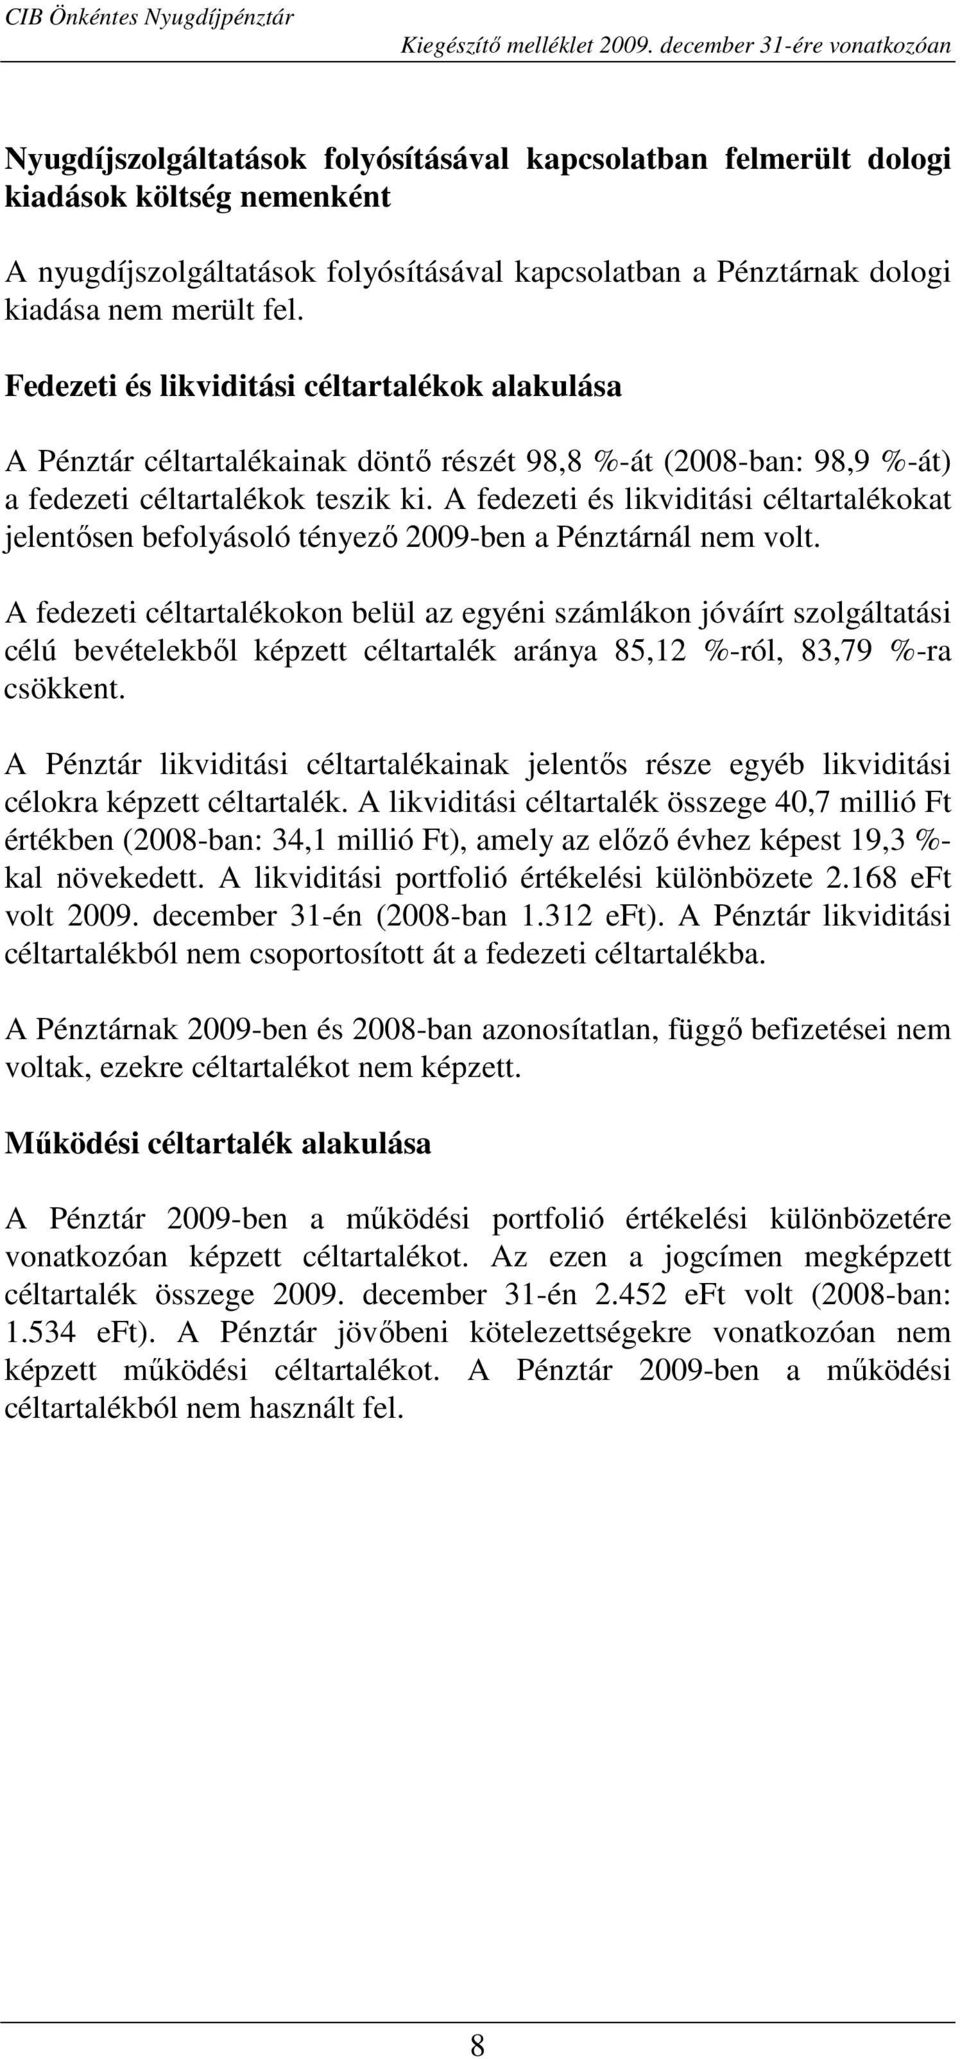 A fedezeti és likviditási céltartalékokat jelentısen befolyásoló tényezı 2009-ben a Pénztárnál nem volt.